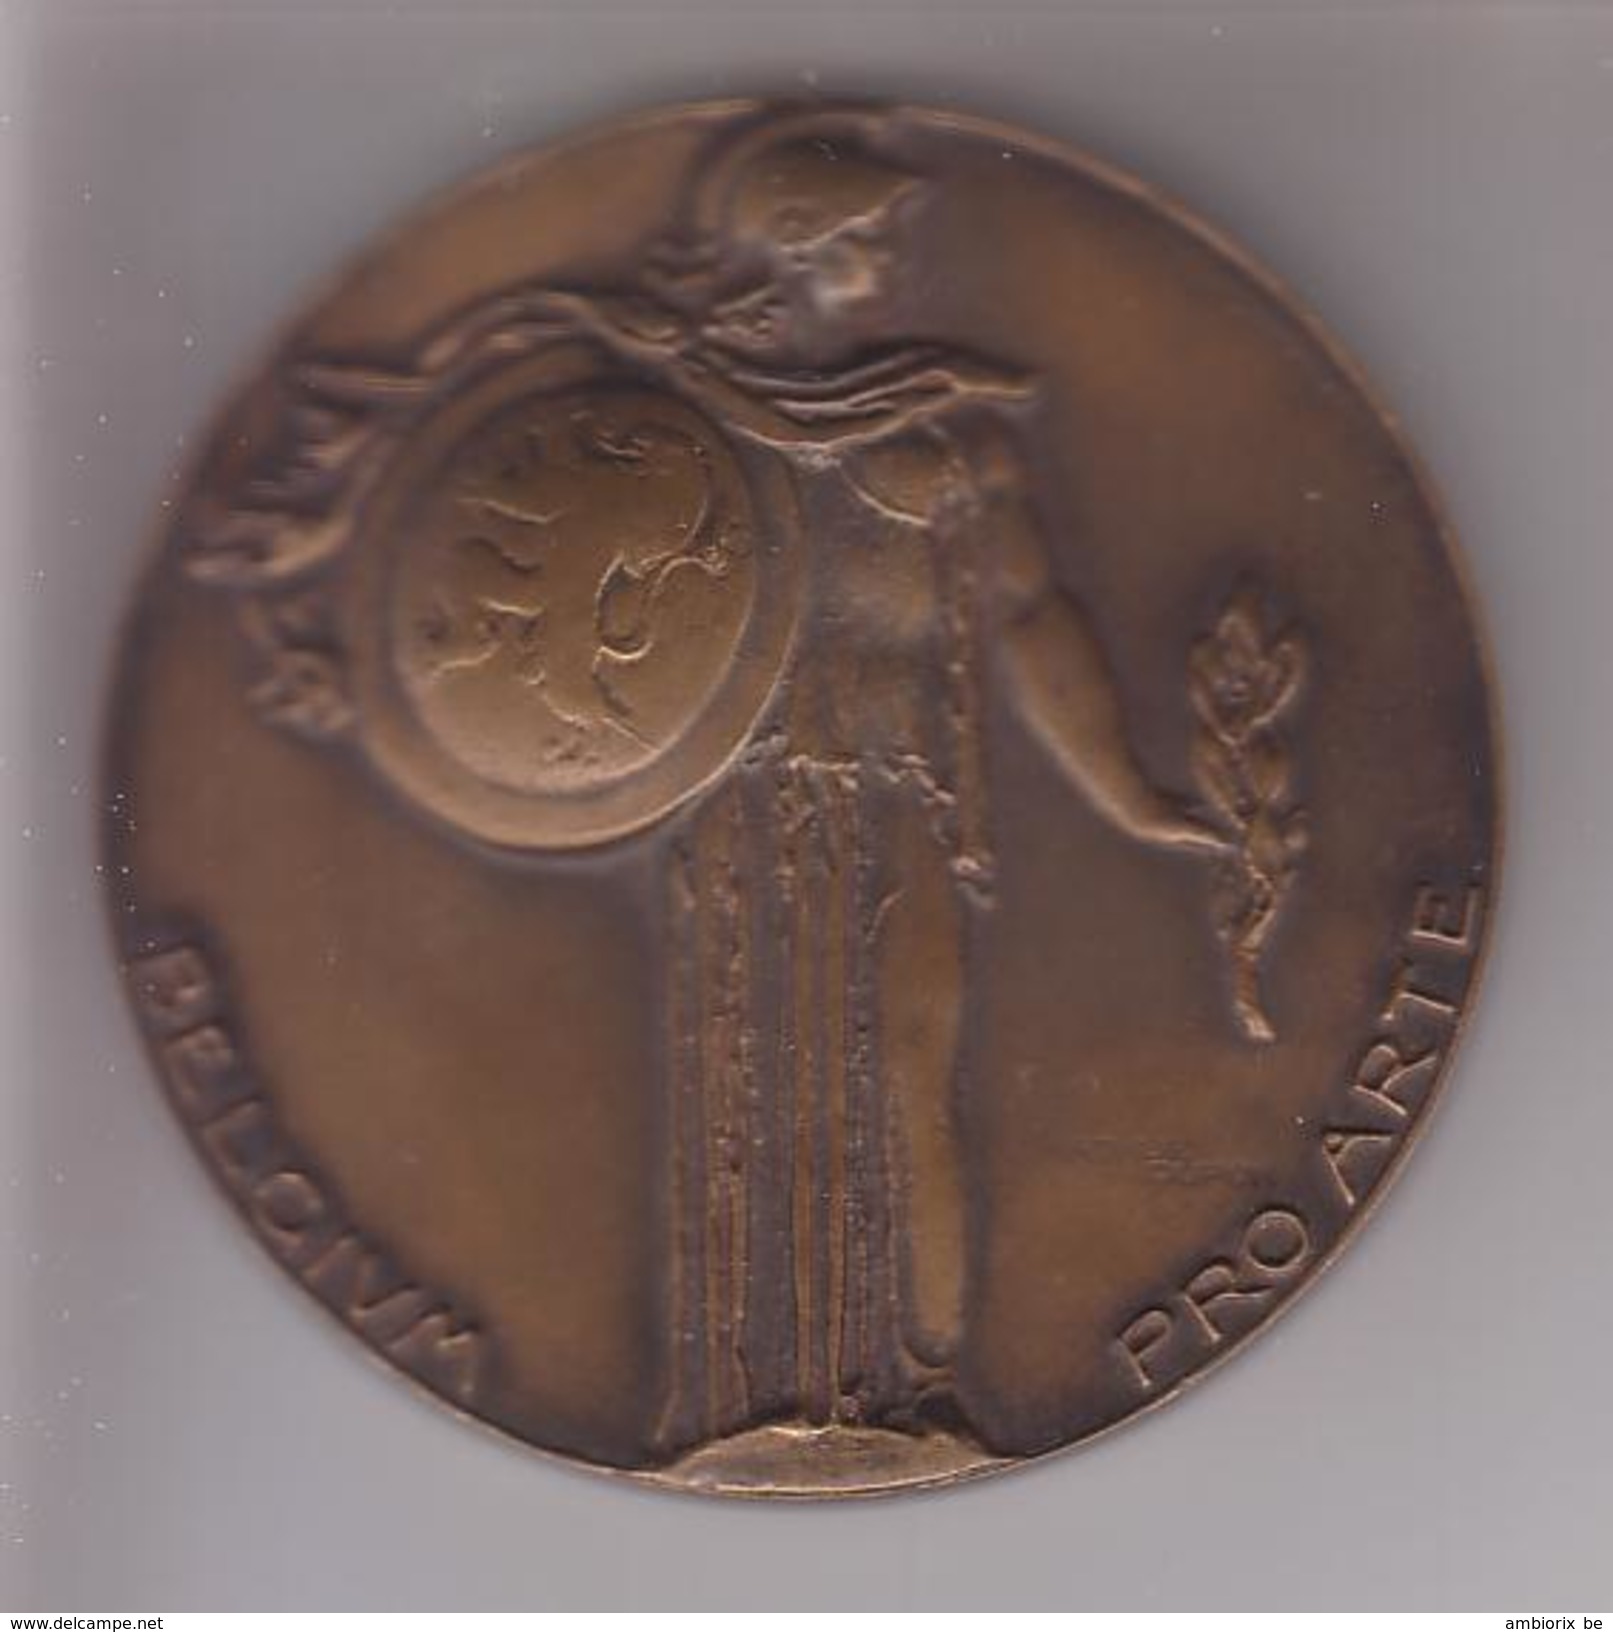 BELGIUM PRO ARTE - Médaille Du Gouvernement Pour Chant - Unternehmen